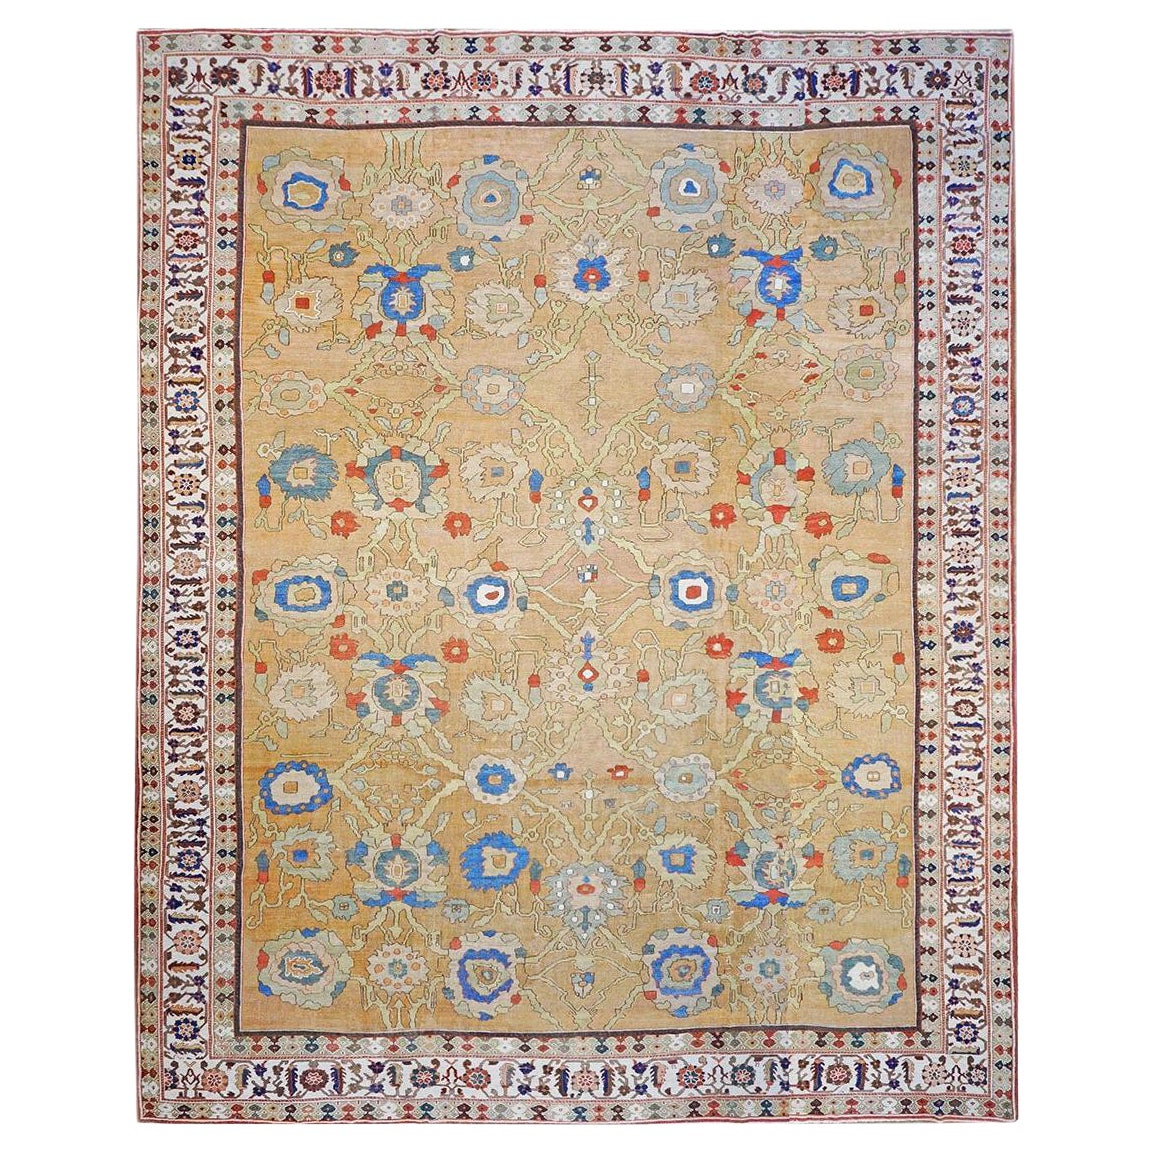 Antiker persischer Sultanabad-Teppich aus dem 19. Jahrhundert, 15x19, hellbraun, rostfarben und blau, handgefertigt